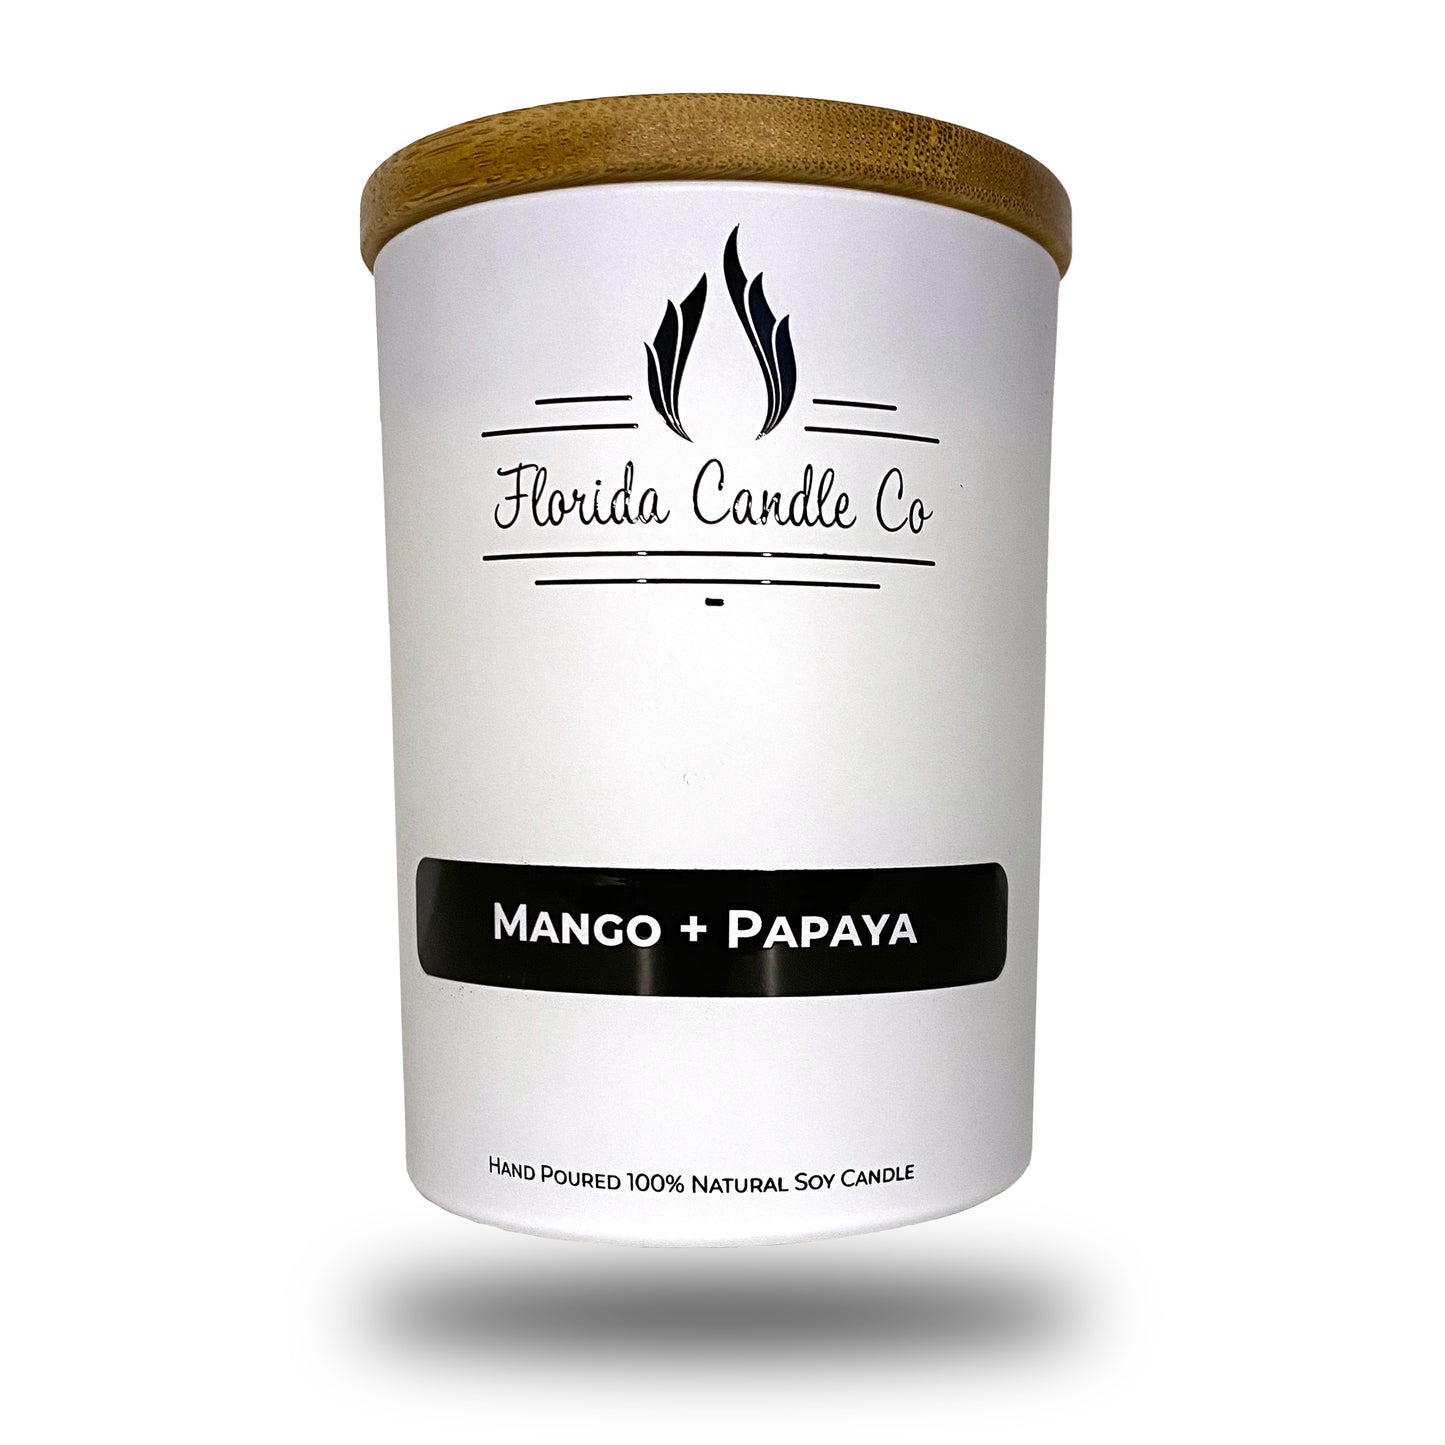 Mango + Papaya Soy Candle